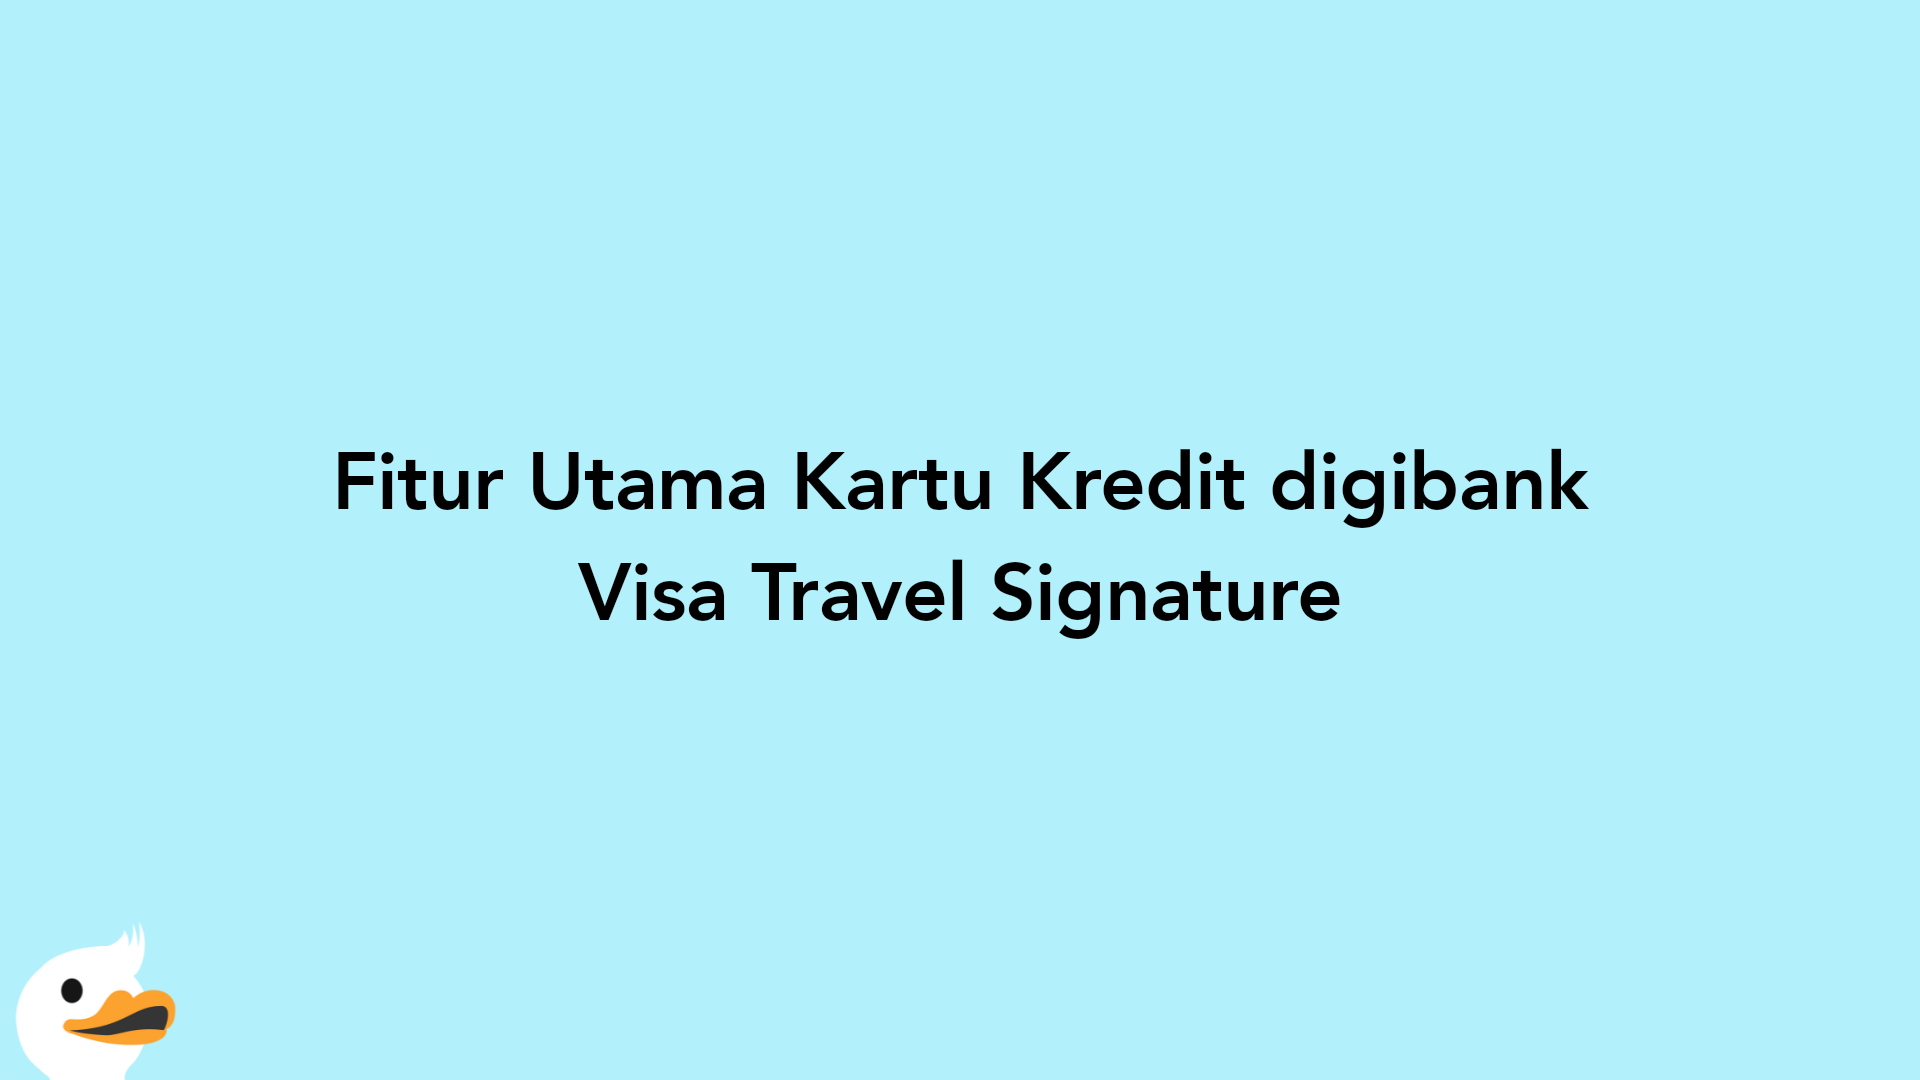 Fitur Utama Kartu Kredit digibank Visa Travel Signature